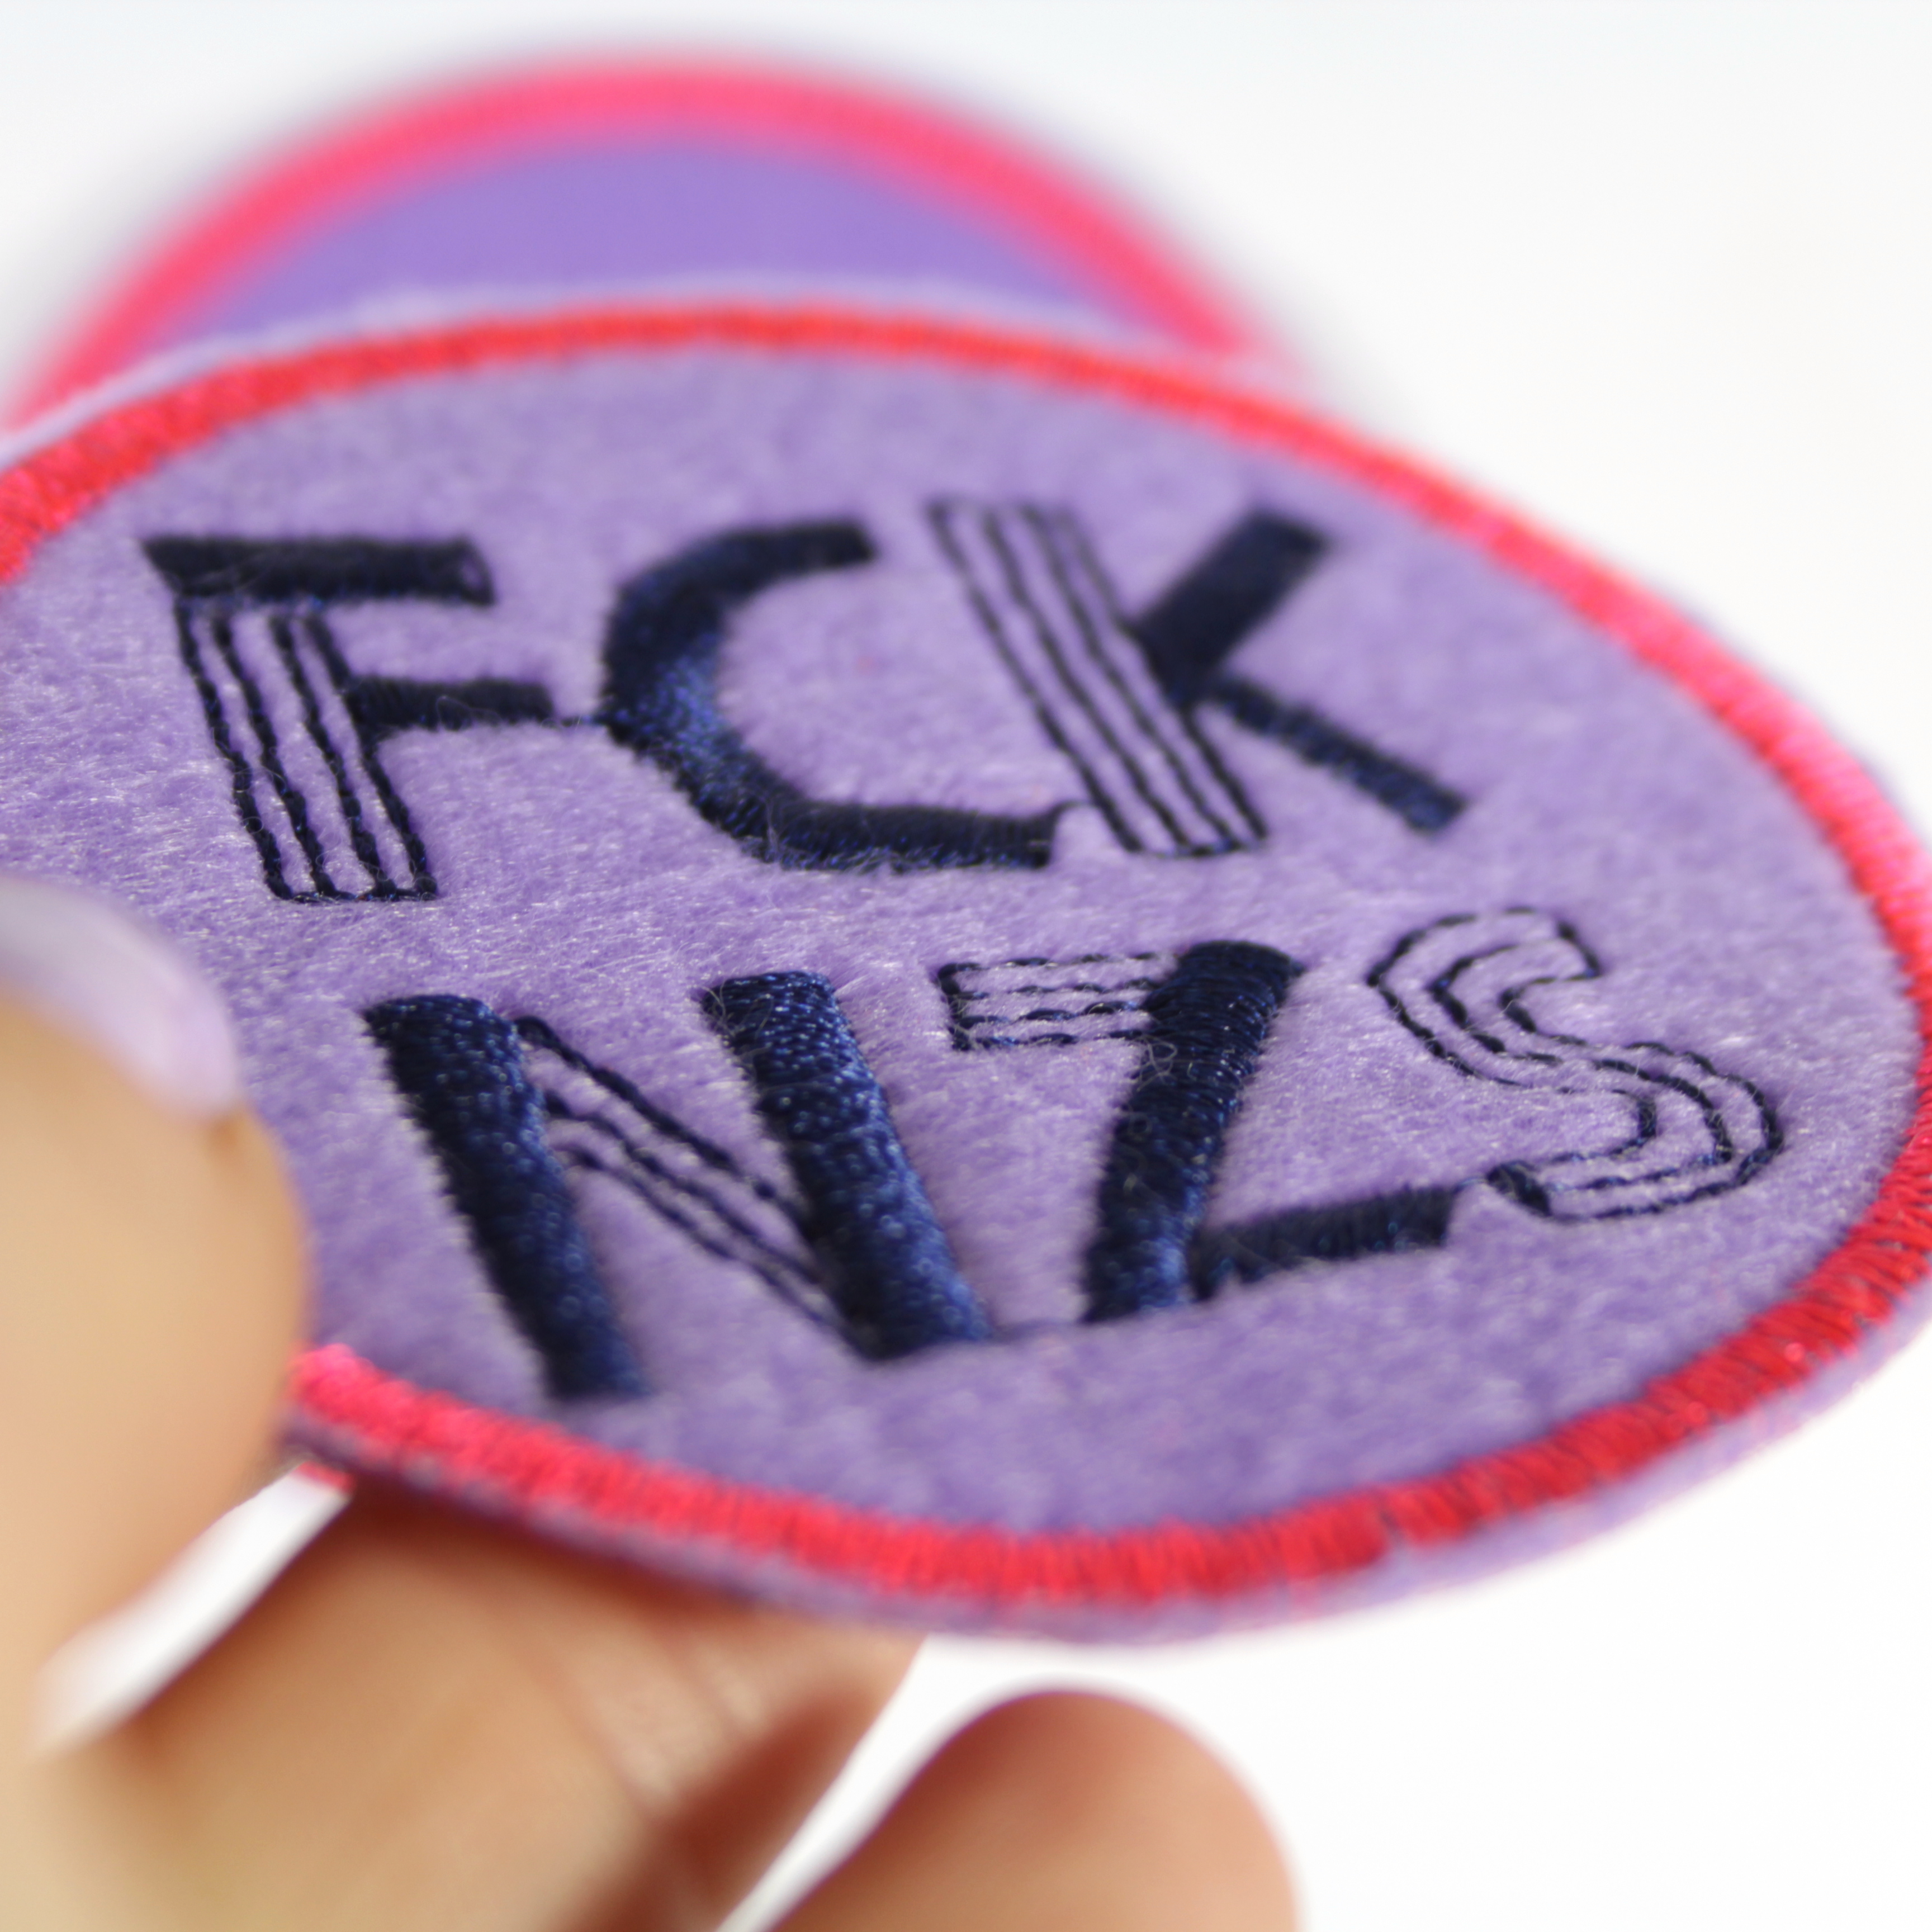 FCK NZS Patches zum aufbügeln - Das bunte Statement! lila pink